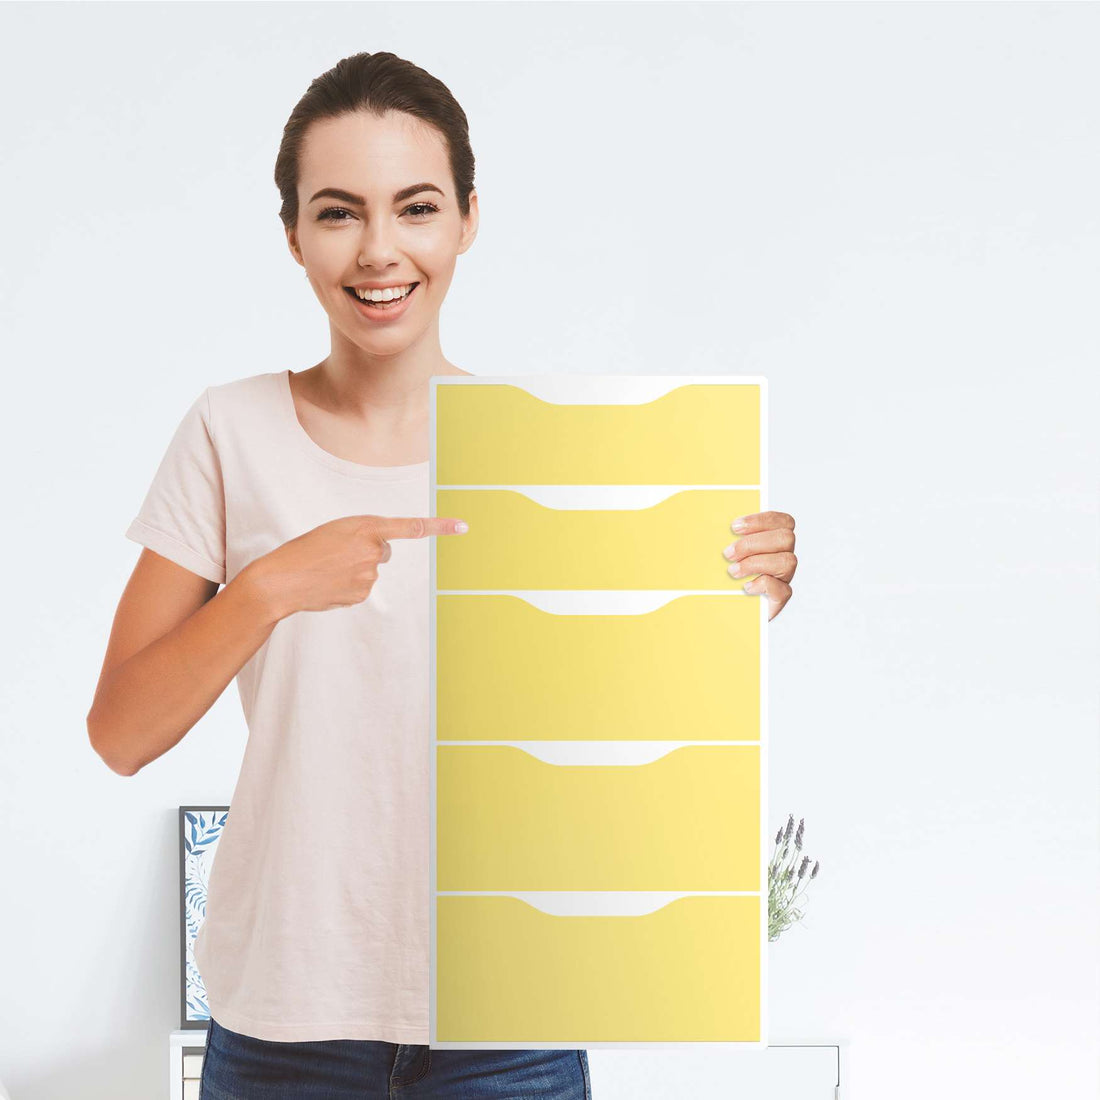 Klebefolie für Möbel Gelb Light - IKEA Alex 5 Schubladen - Folie